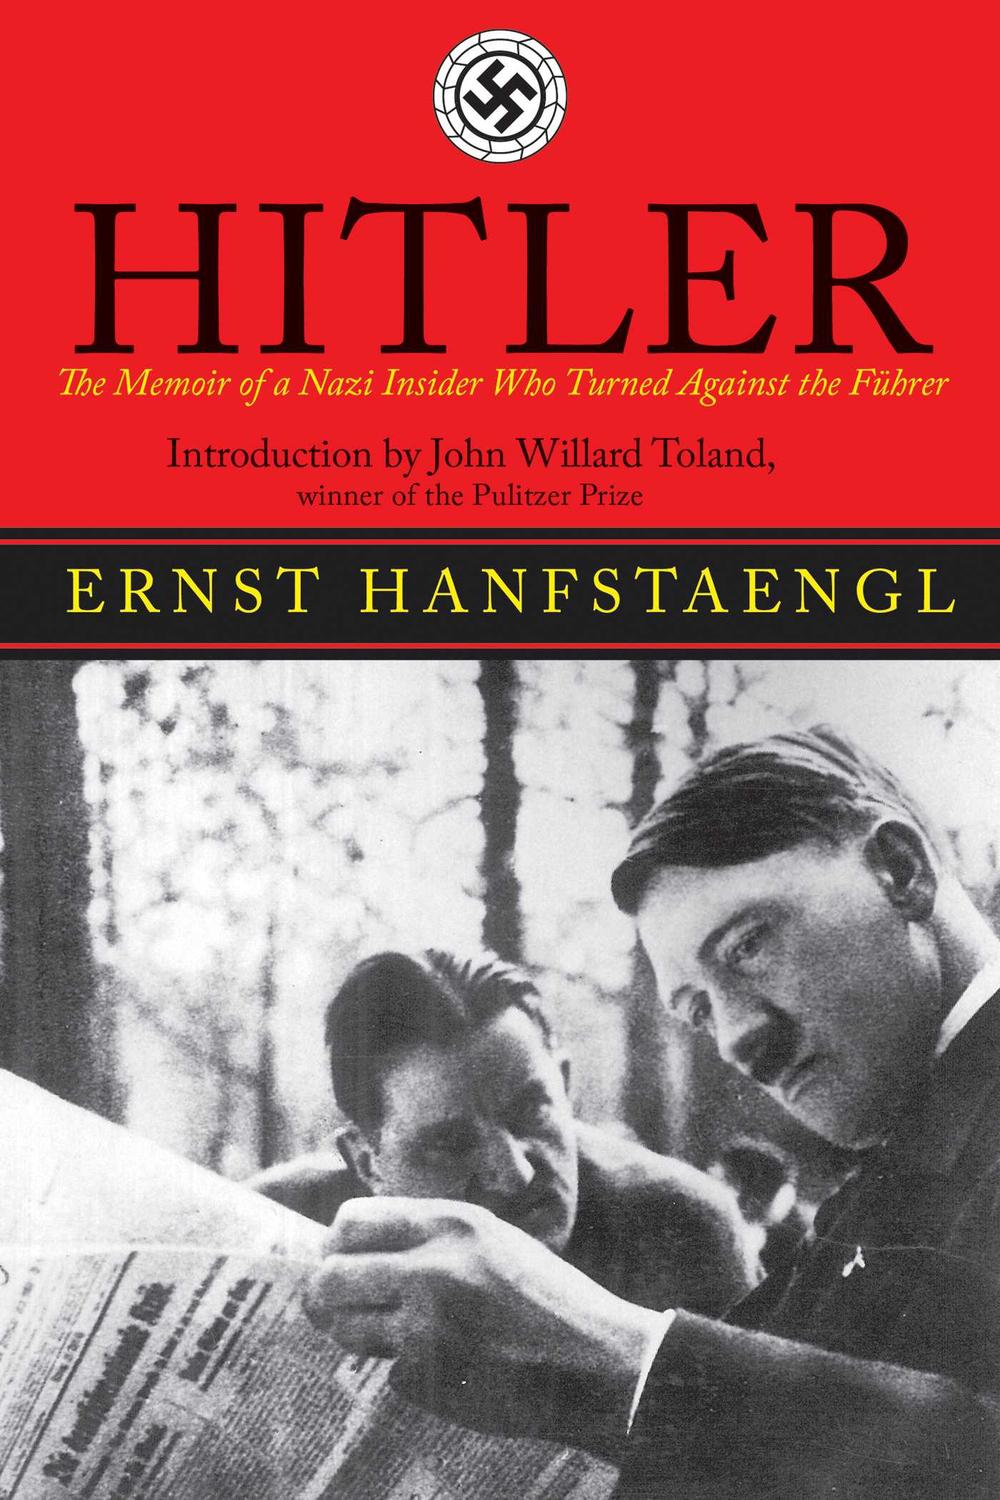 Hitler: The Memoir of the Nazi Insider Who Turned Against the Fuhrer Ernst Hanfstaengl Author